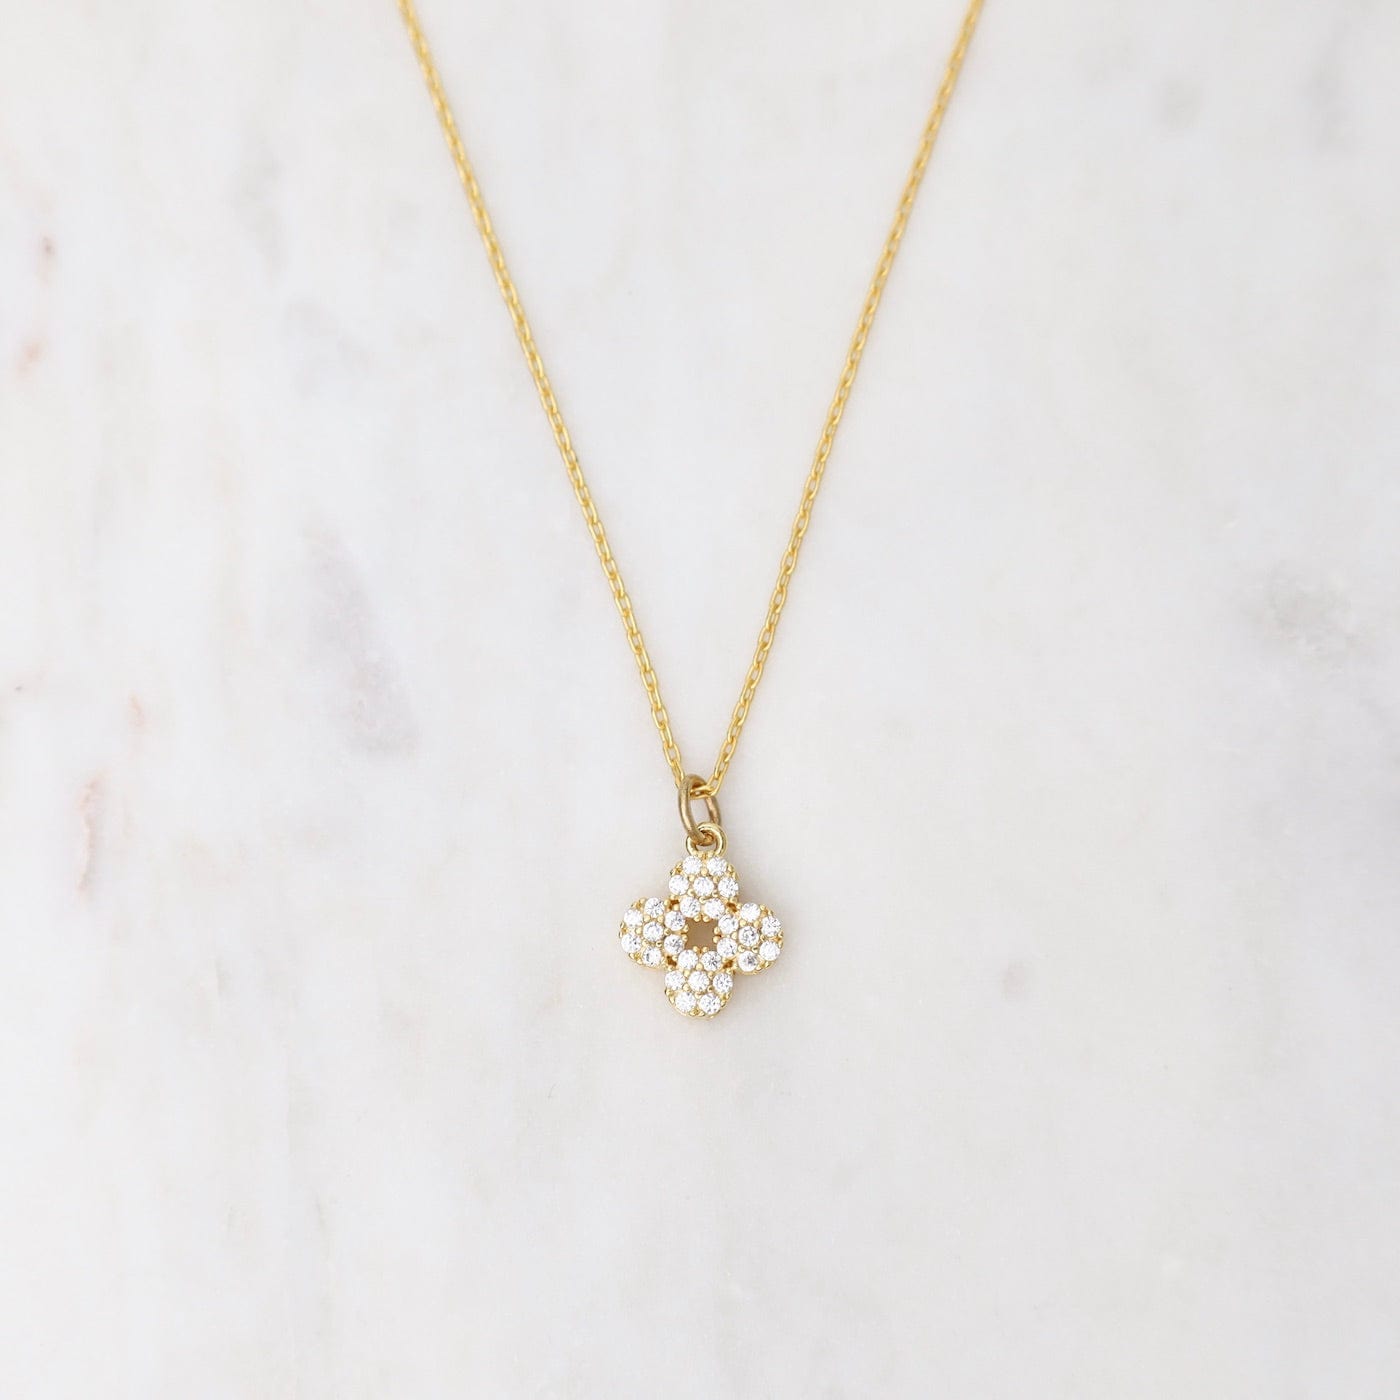 NKL-JM Gold Crystal Lotus Flower Necklace